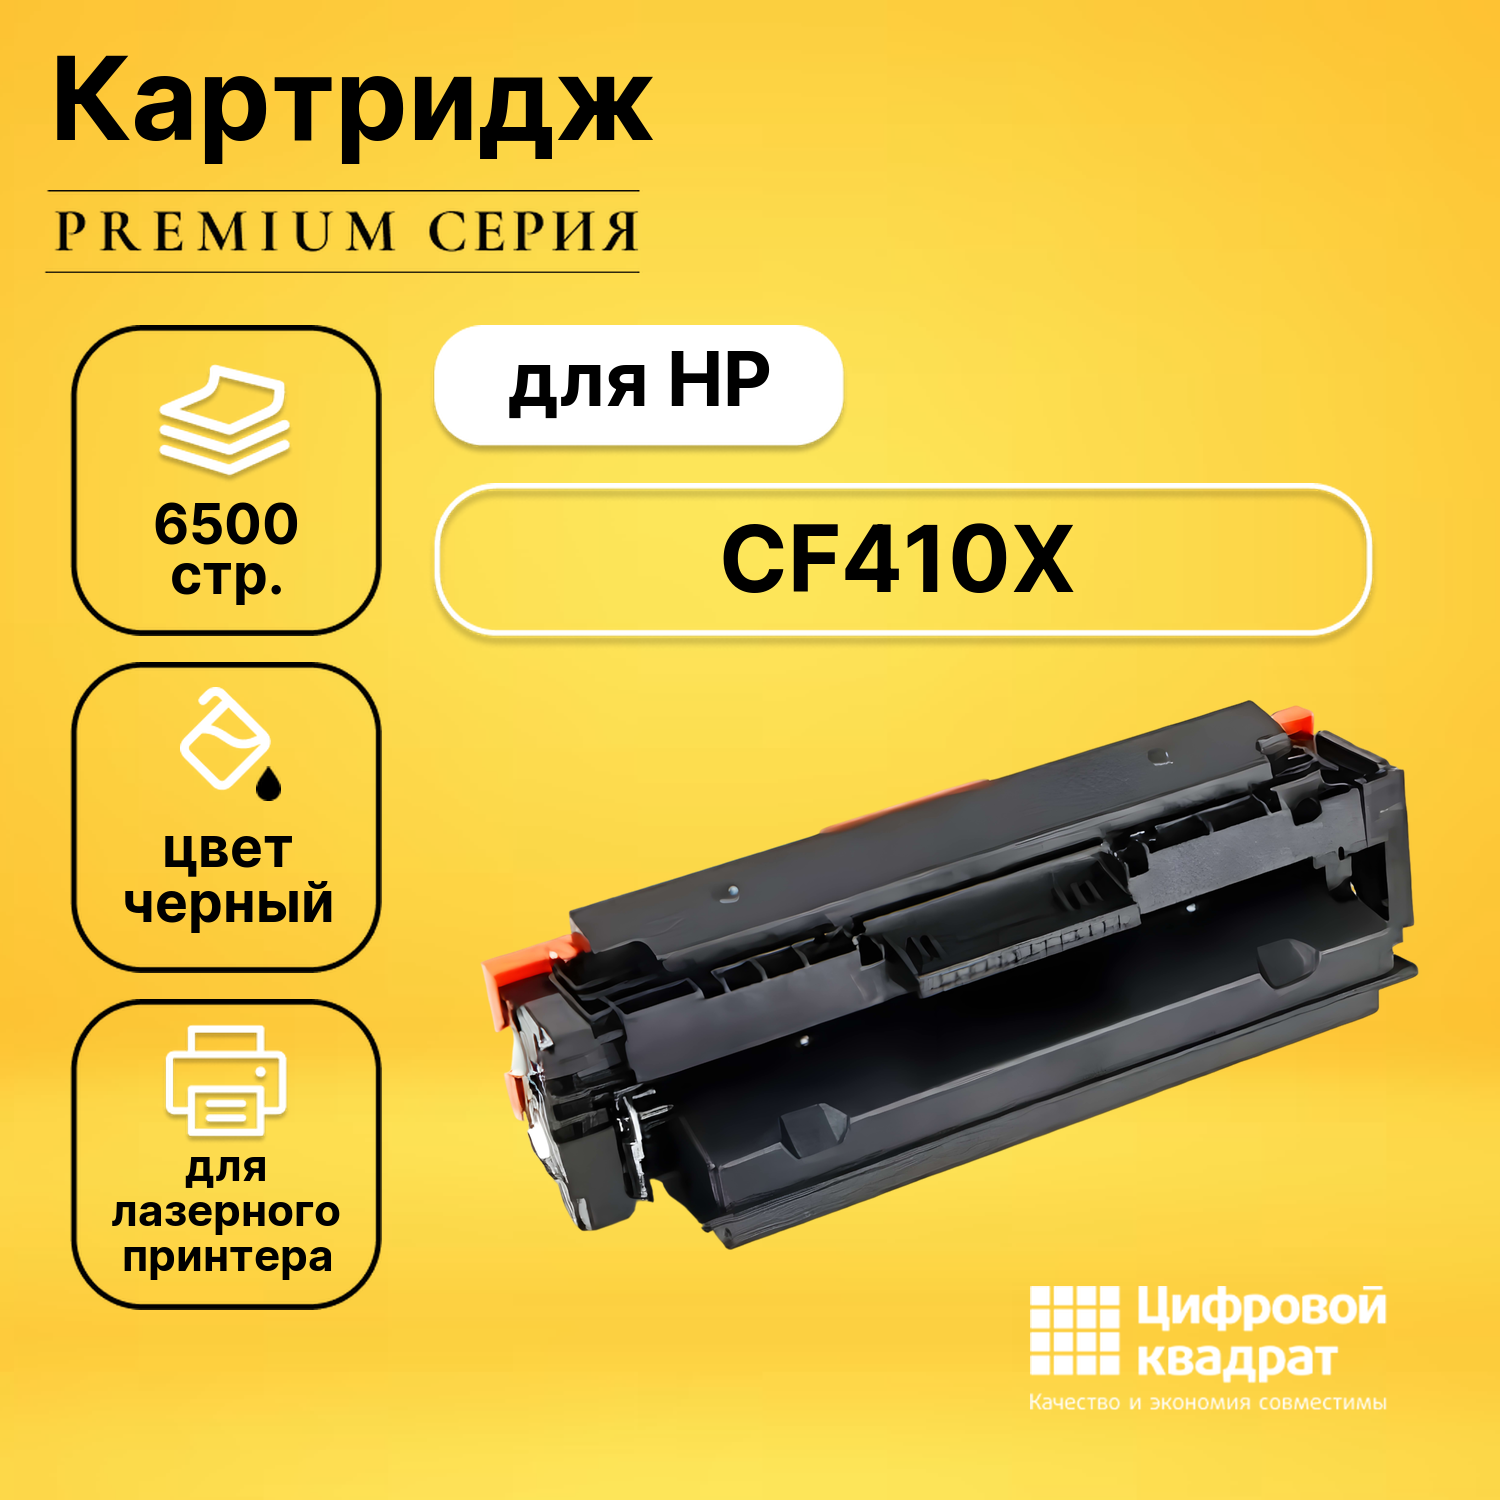 Картридж DS CF410X HP 410X черный увеличенный ресурс совместимый